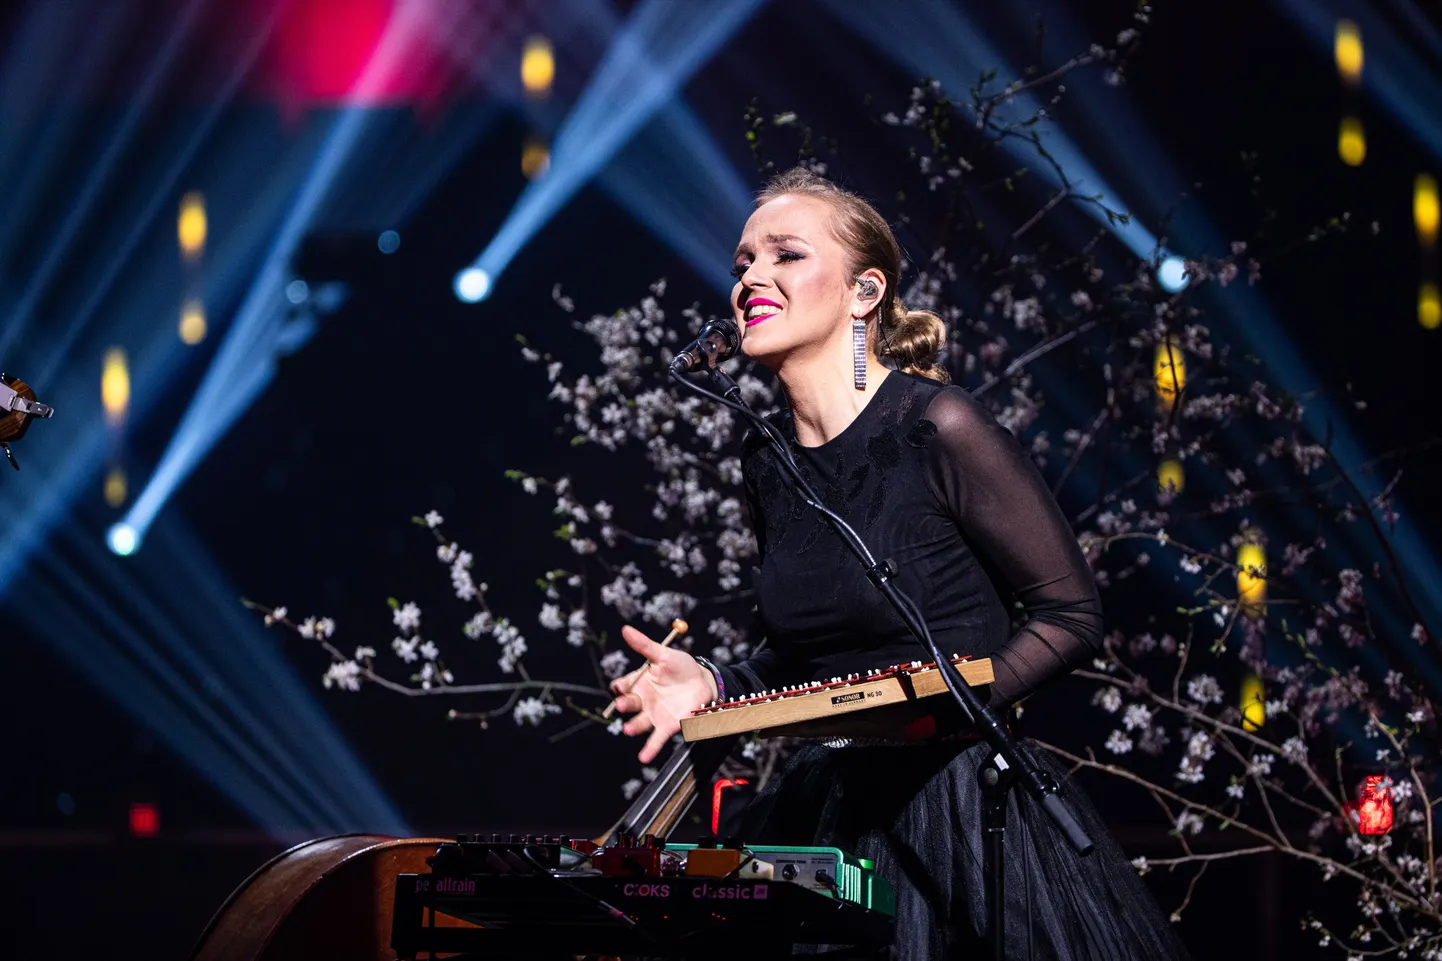 Среди артистов, которые выступят на фестивале "Narva-Jõesuu jazz" в пятницу, - певица Кадри Вооранд, которая выйдет на сцену с квинтетом Танеля Рубена.